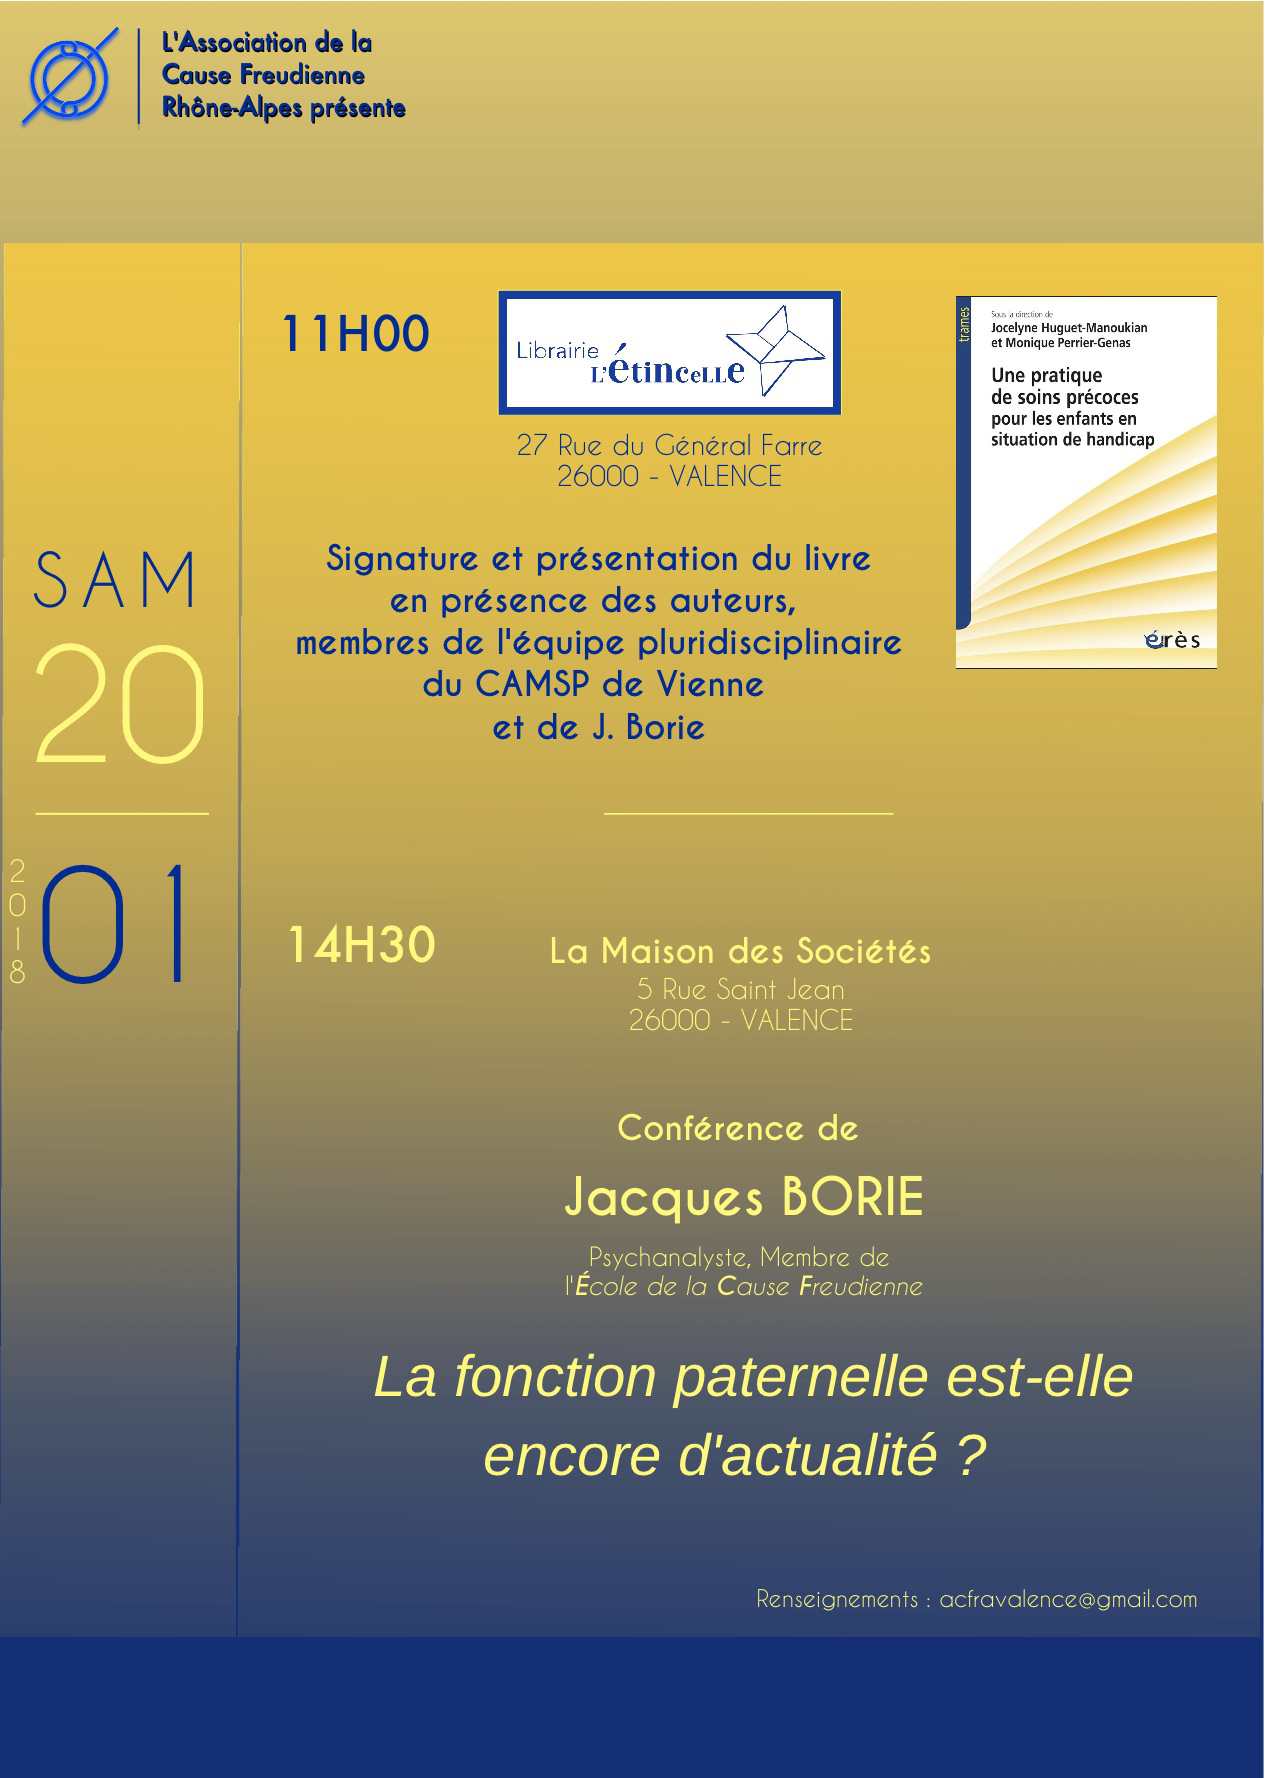 Conférence Jacques Borie - Fonction paternelle